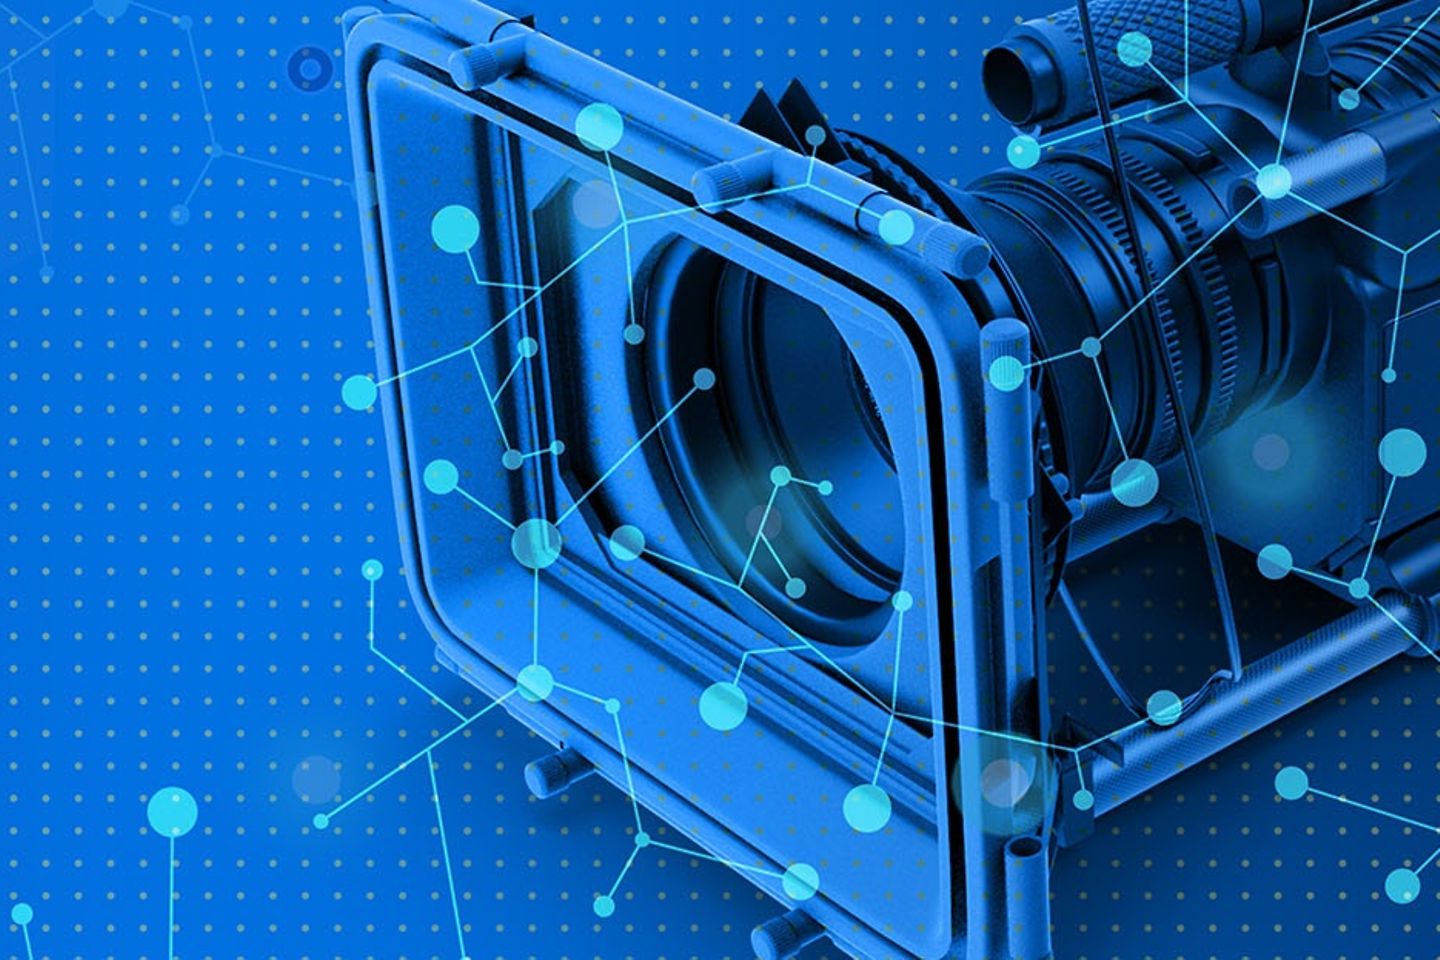 Uma câmera de filmagem diante de um fundo azul.